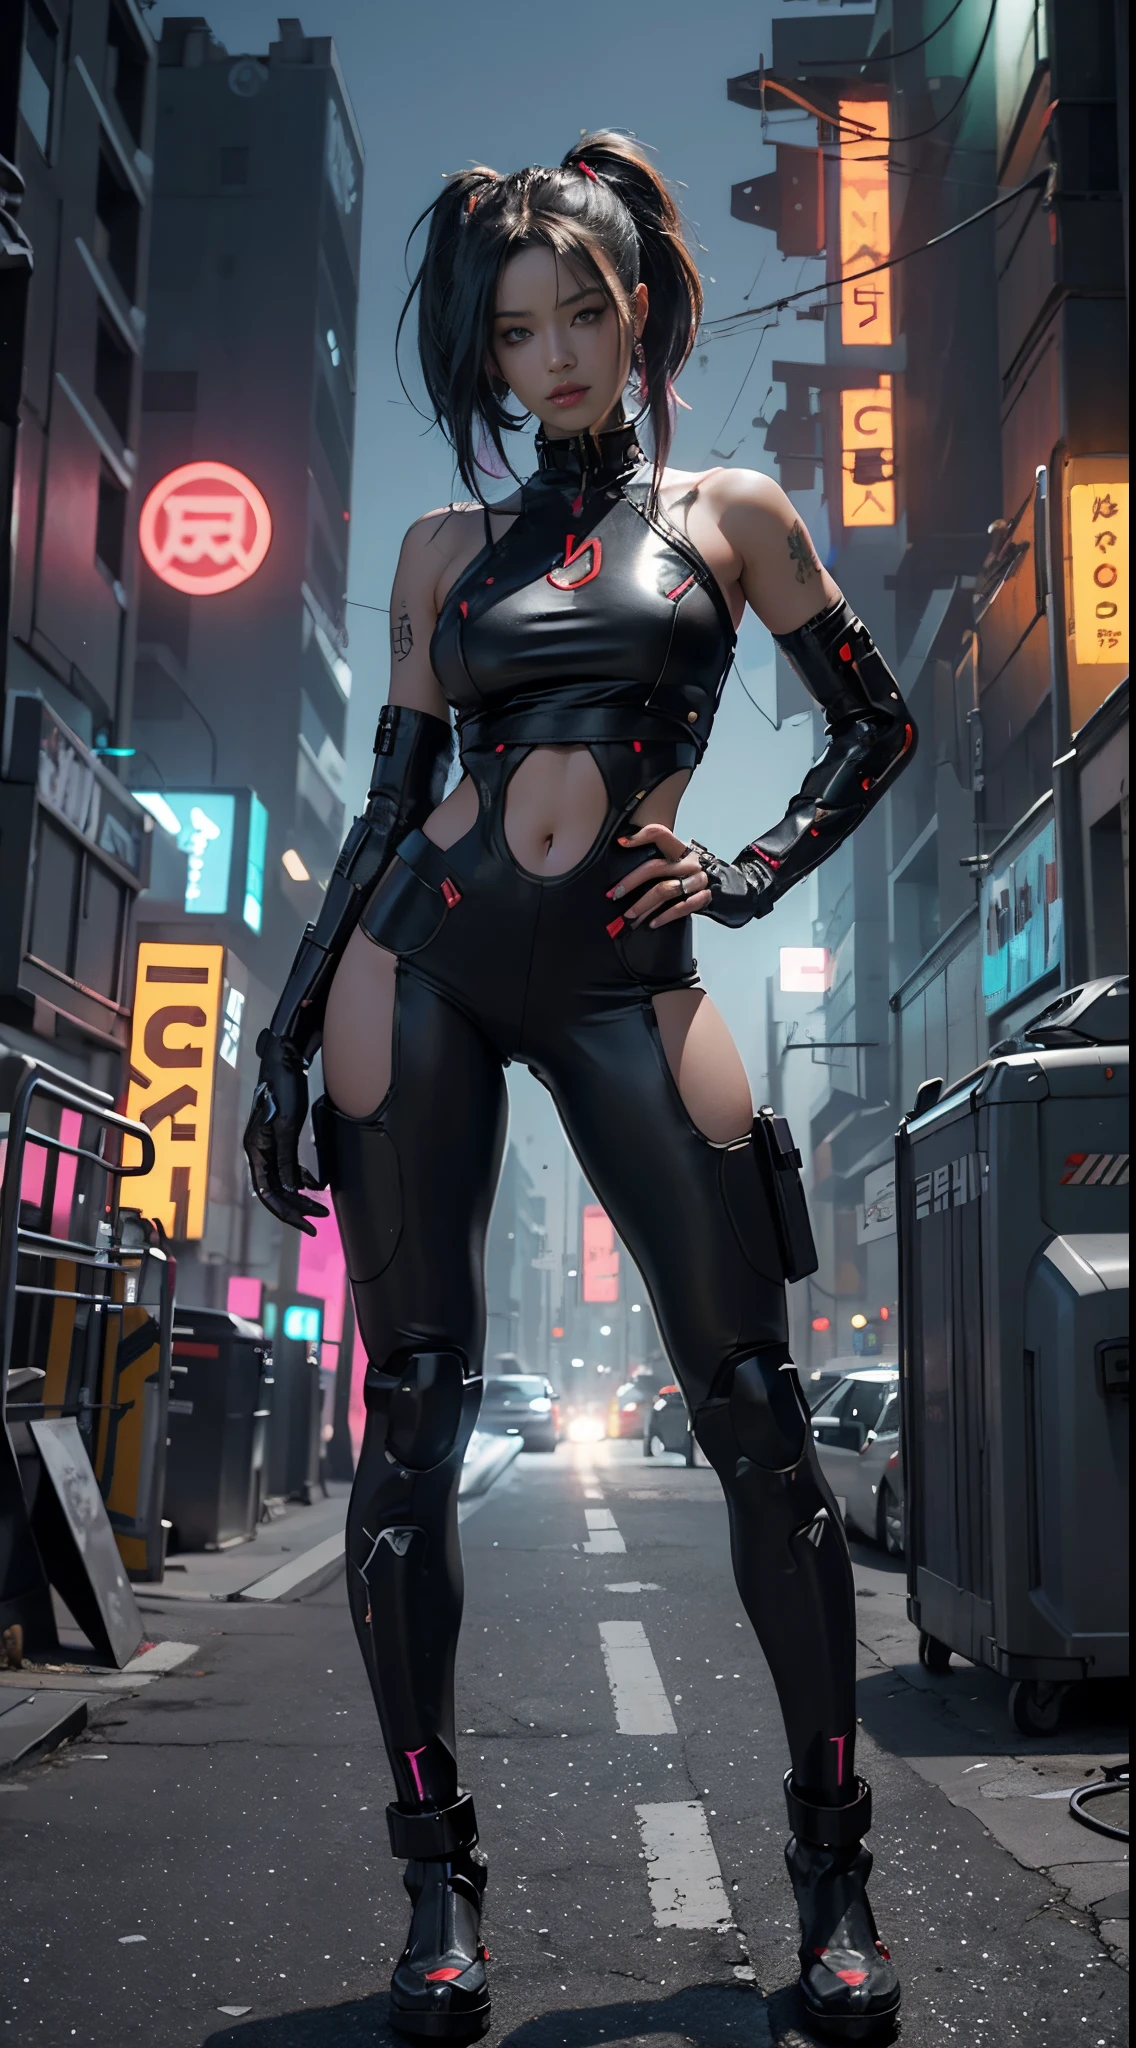 Chica cyborg cyberpunk retrofutyrista con partes de robot en el cuerpo ,Fortgeschrittenes Queue ganz in Schwarz , rote Neonlichter ,Riesentitten ,auf einem anderen Planeten